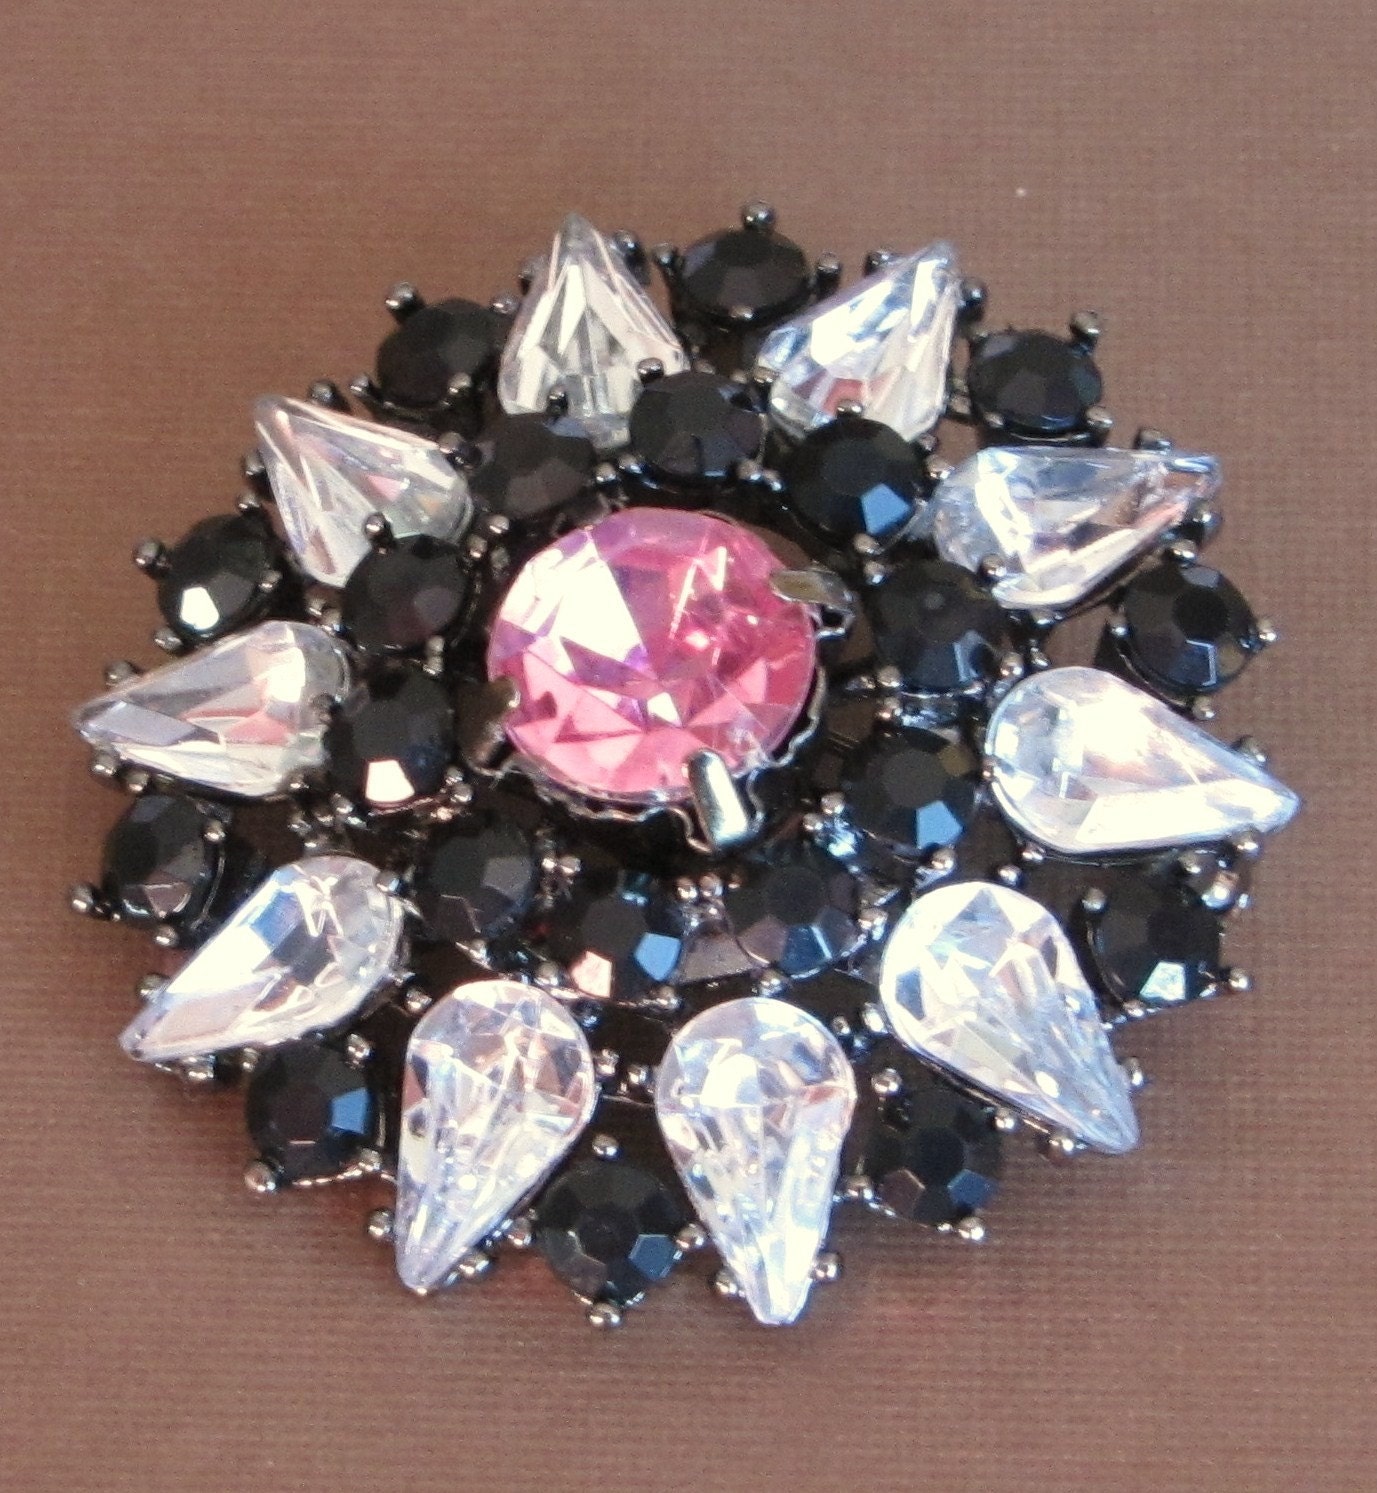 SALE Vintage, Antique, Brooch, Pin, Rhinestones, Crystals, Black, Pink, Clear, Wedding, Wedding Jewelry, www.jodaycraf.etsy.com